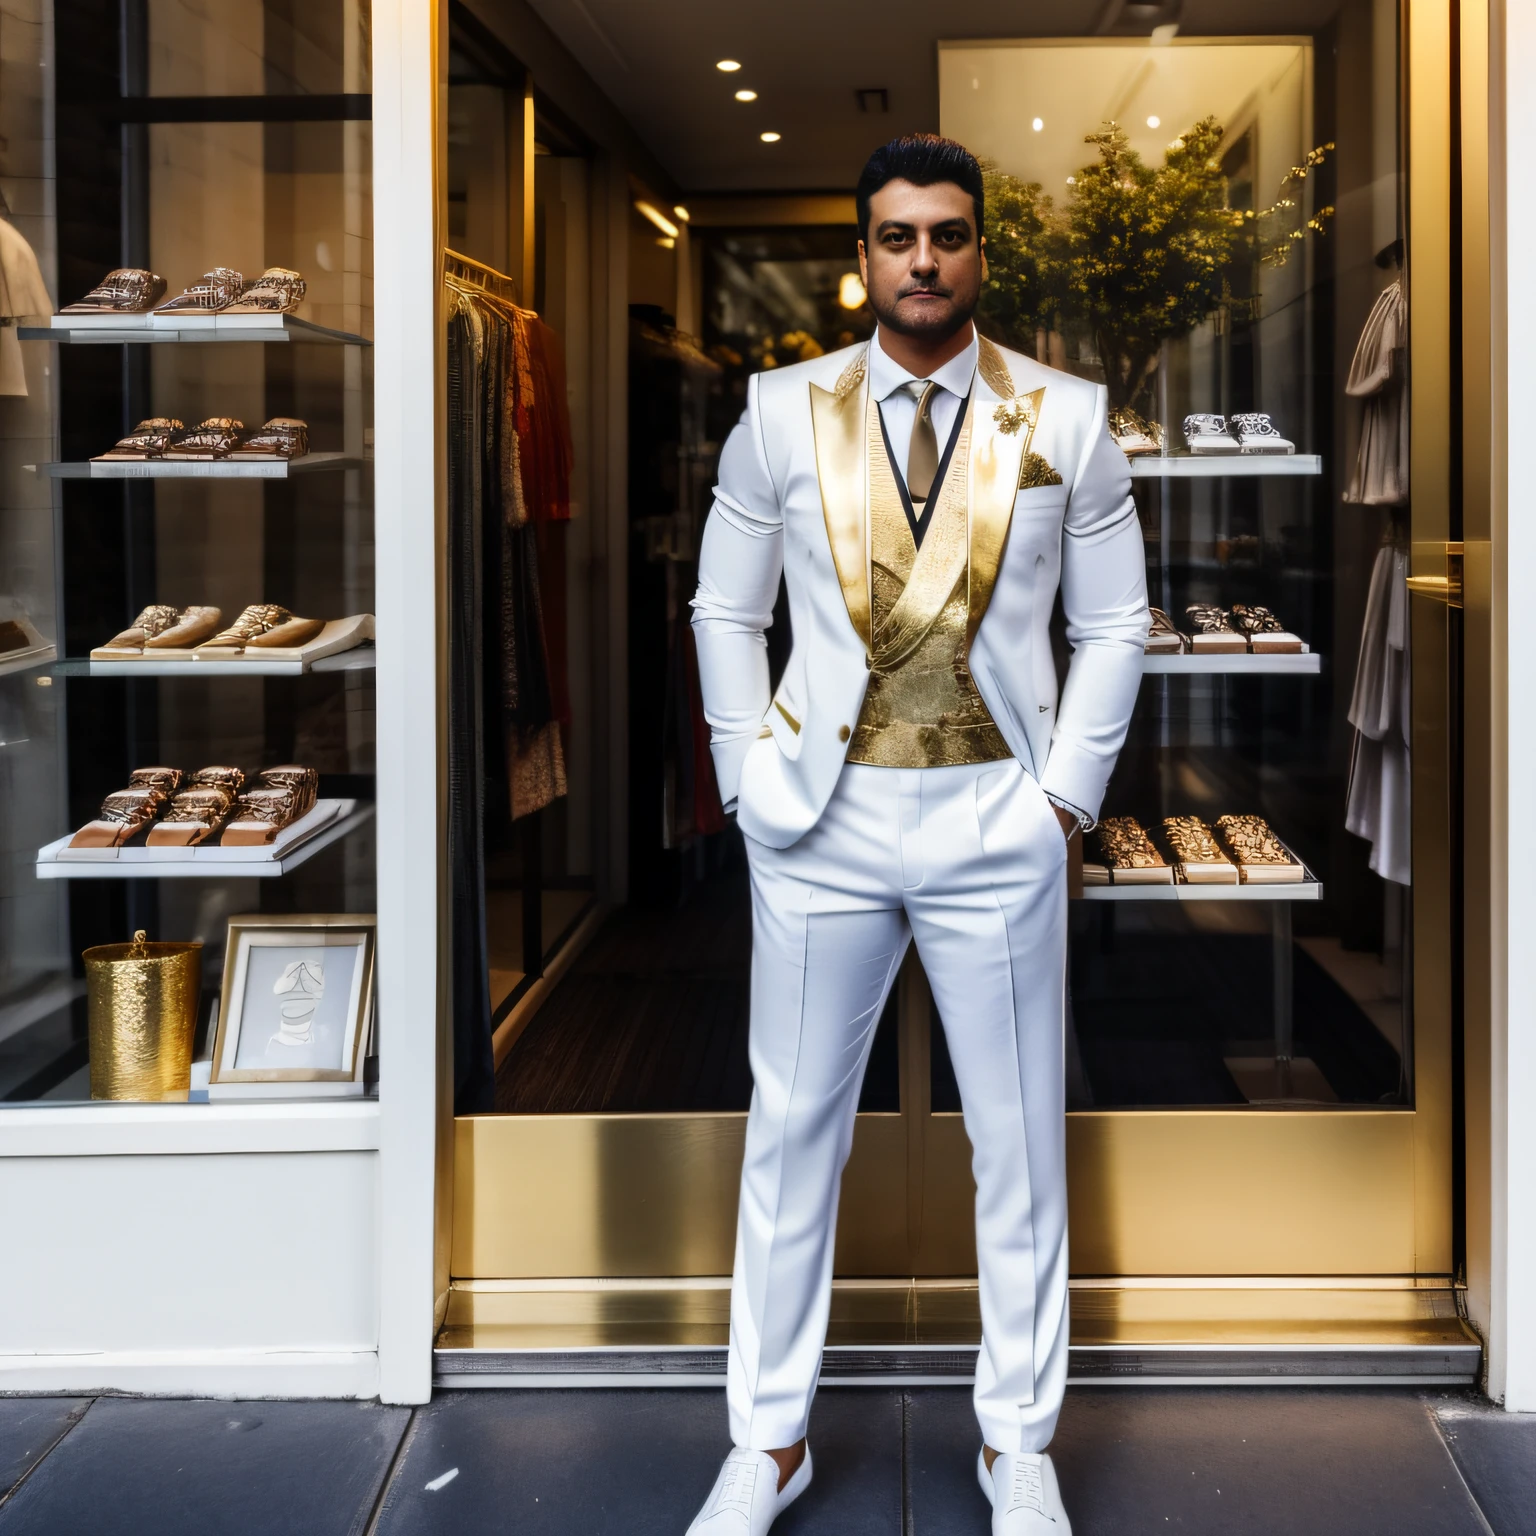 ผู้ชายเต็มตัวยืนพิงหน้าต่างร้านค้าริมถนนในชุดสังคมสีขาวตกแต่งด้วยสีทอง มองออกไปหน้าร้านในเวลาพลบค่ำ